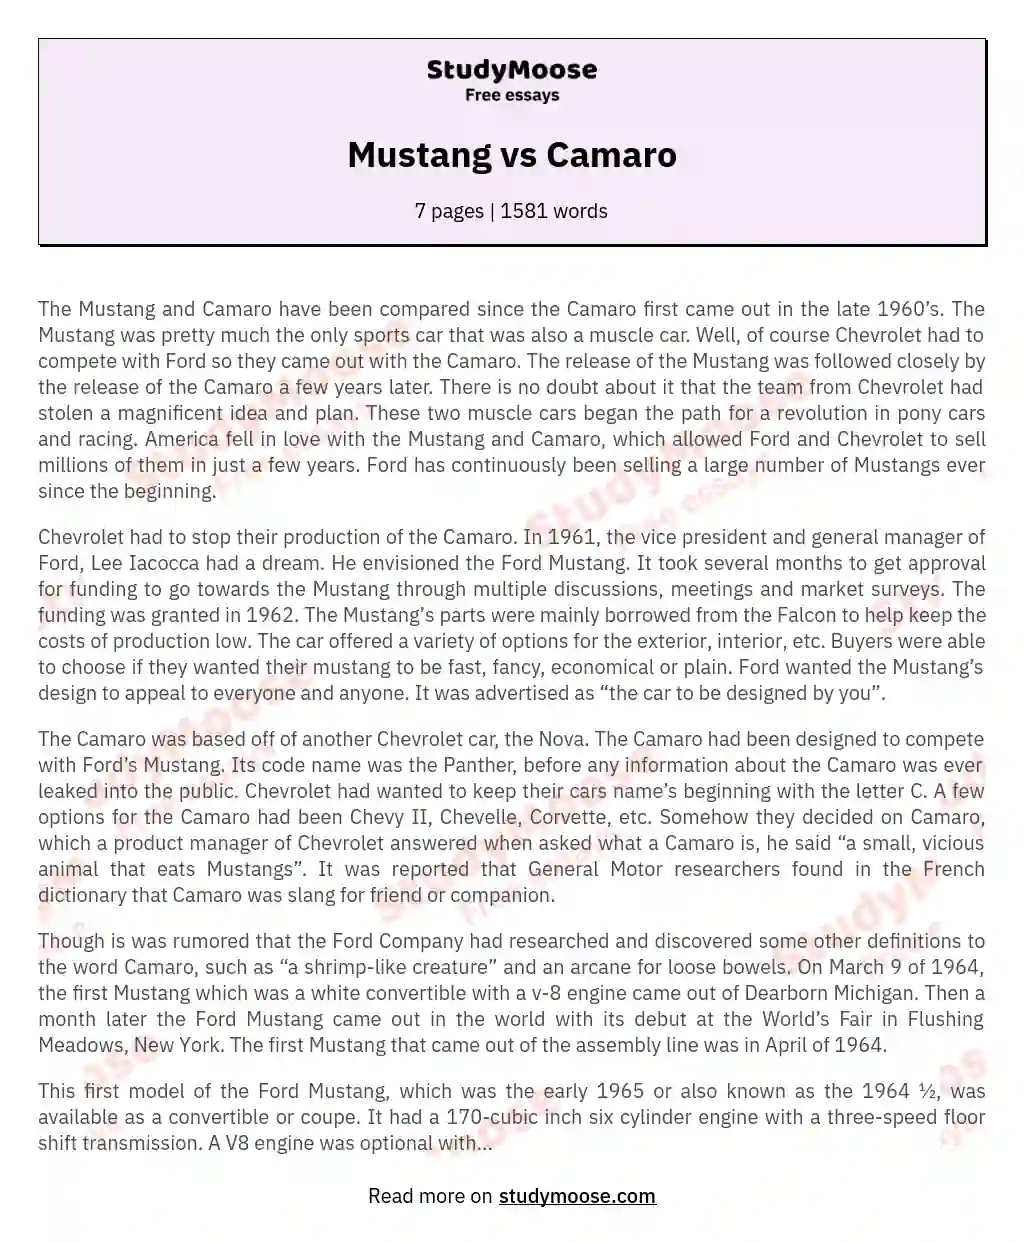 Mustang vs Camaro essay